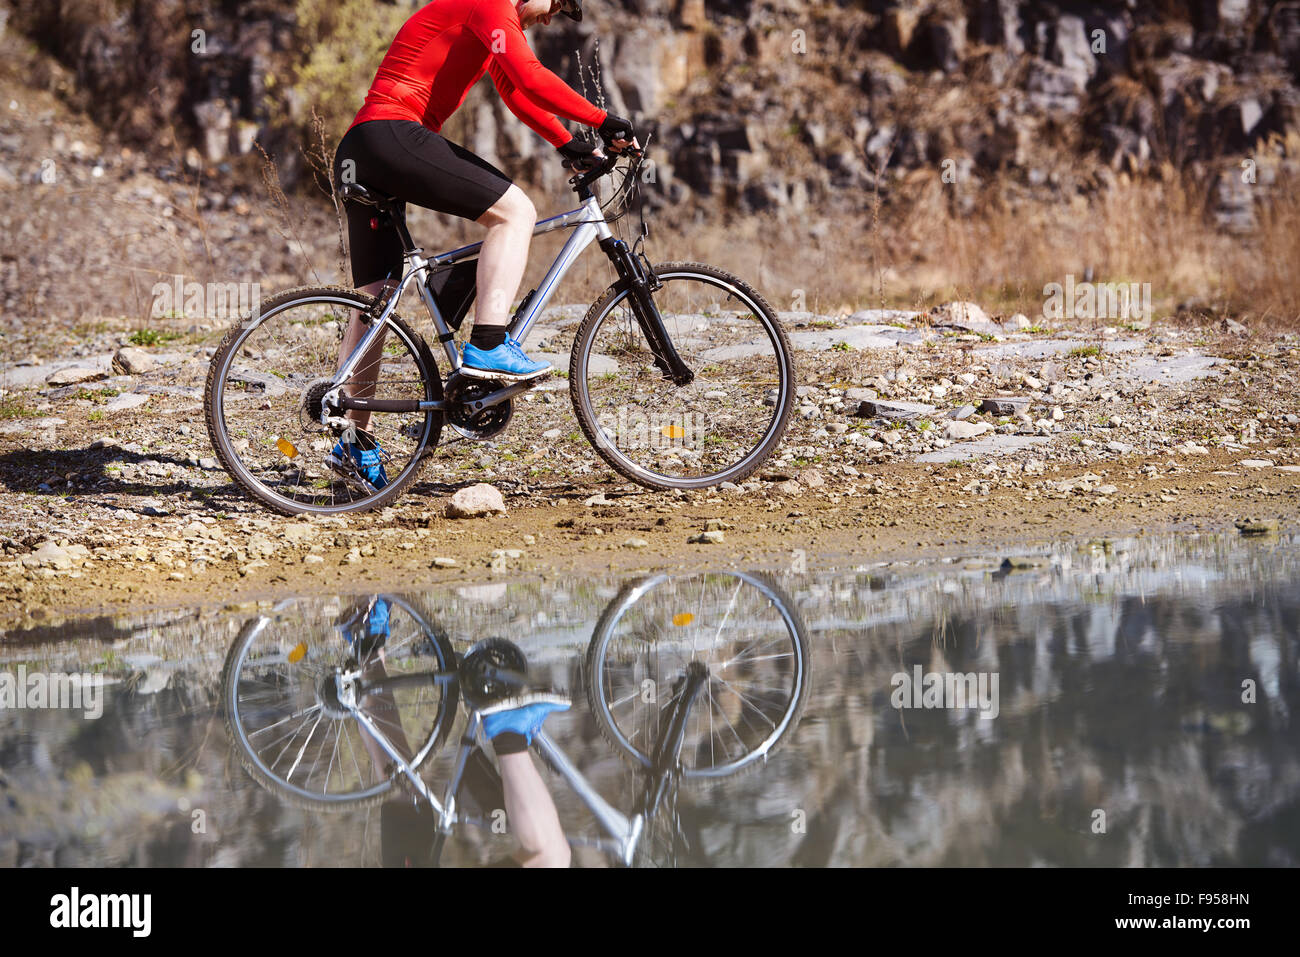 Dettaglio del ciclista uomo riflettendo in pozza d'acqua Foto Stock